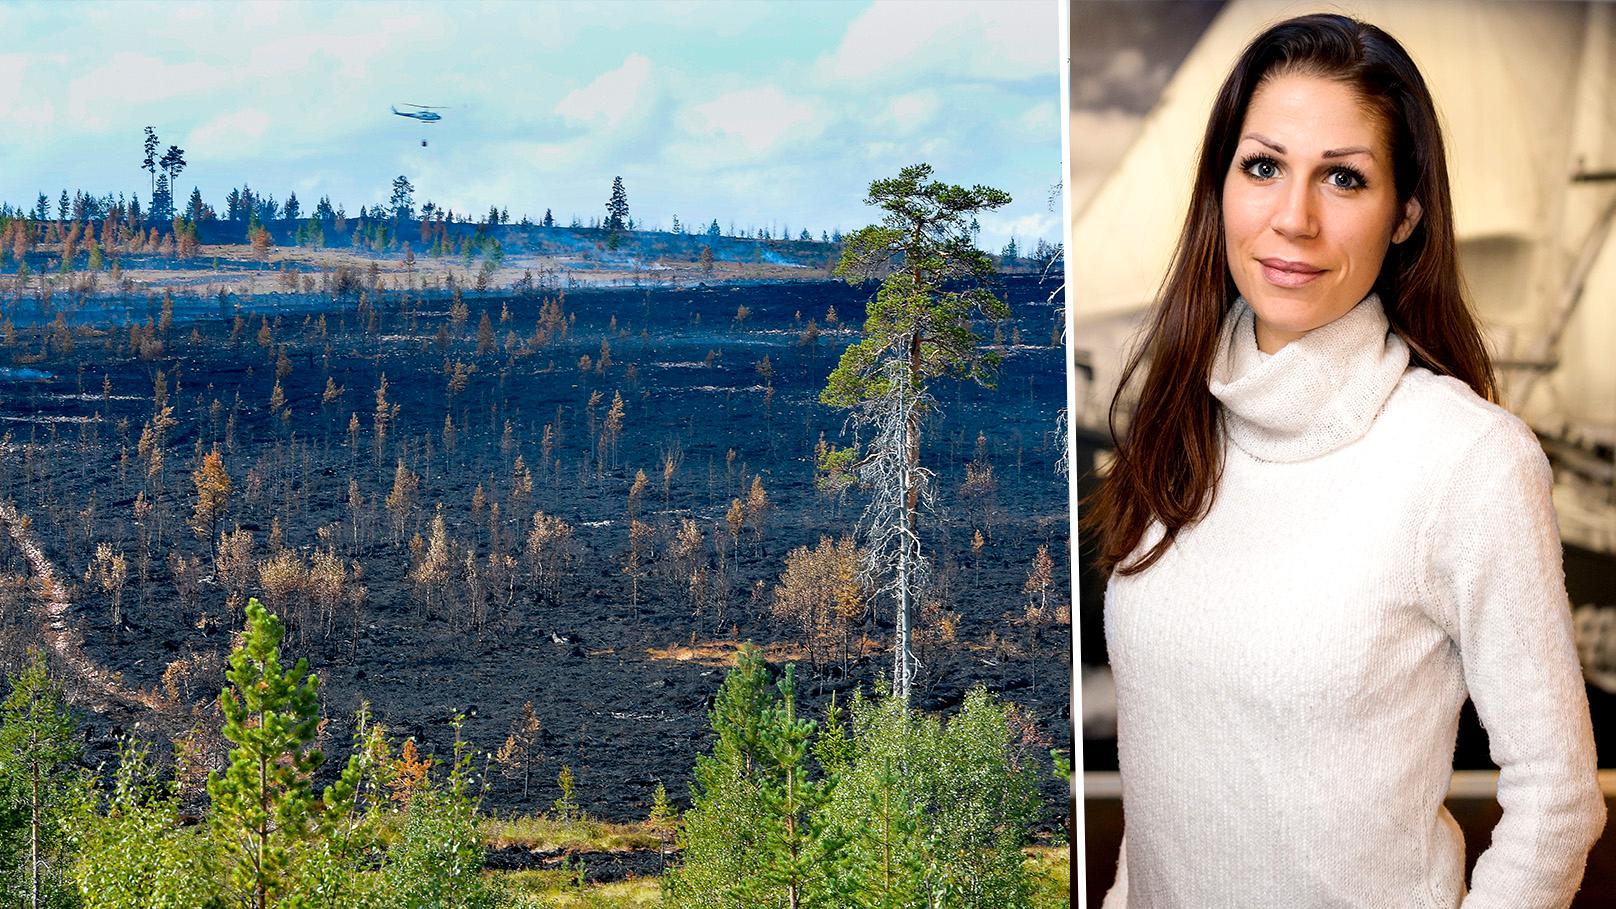 Det är dags att skogsbolagen i Sverige vaknar och förhindrar framtida katastrofer, skriver Lina Burnelius, Greenpeace.